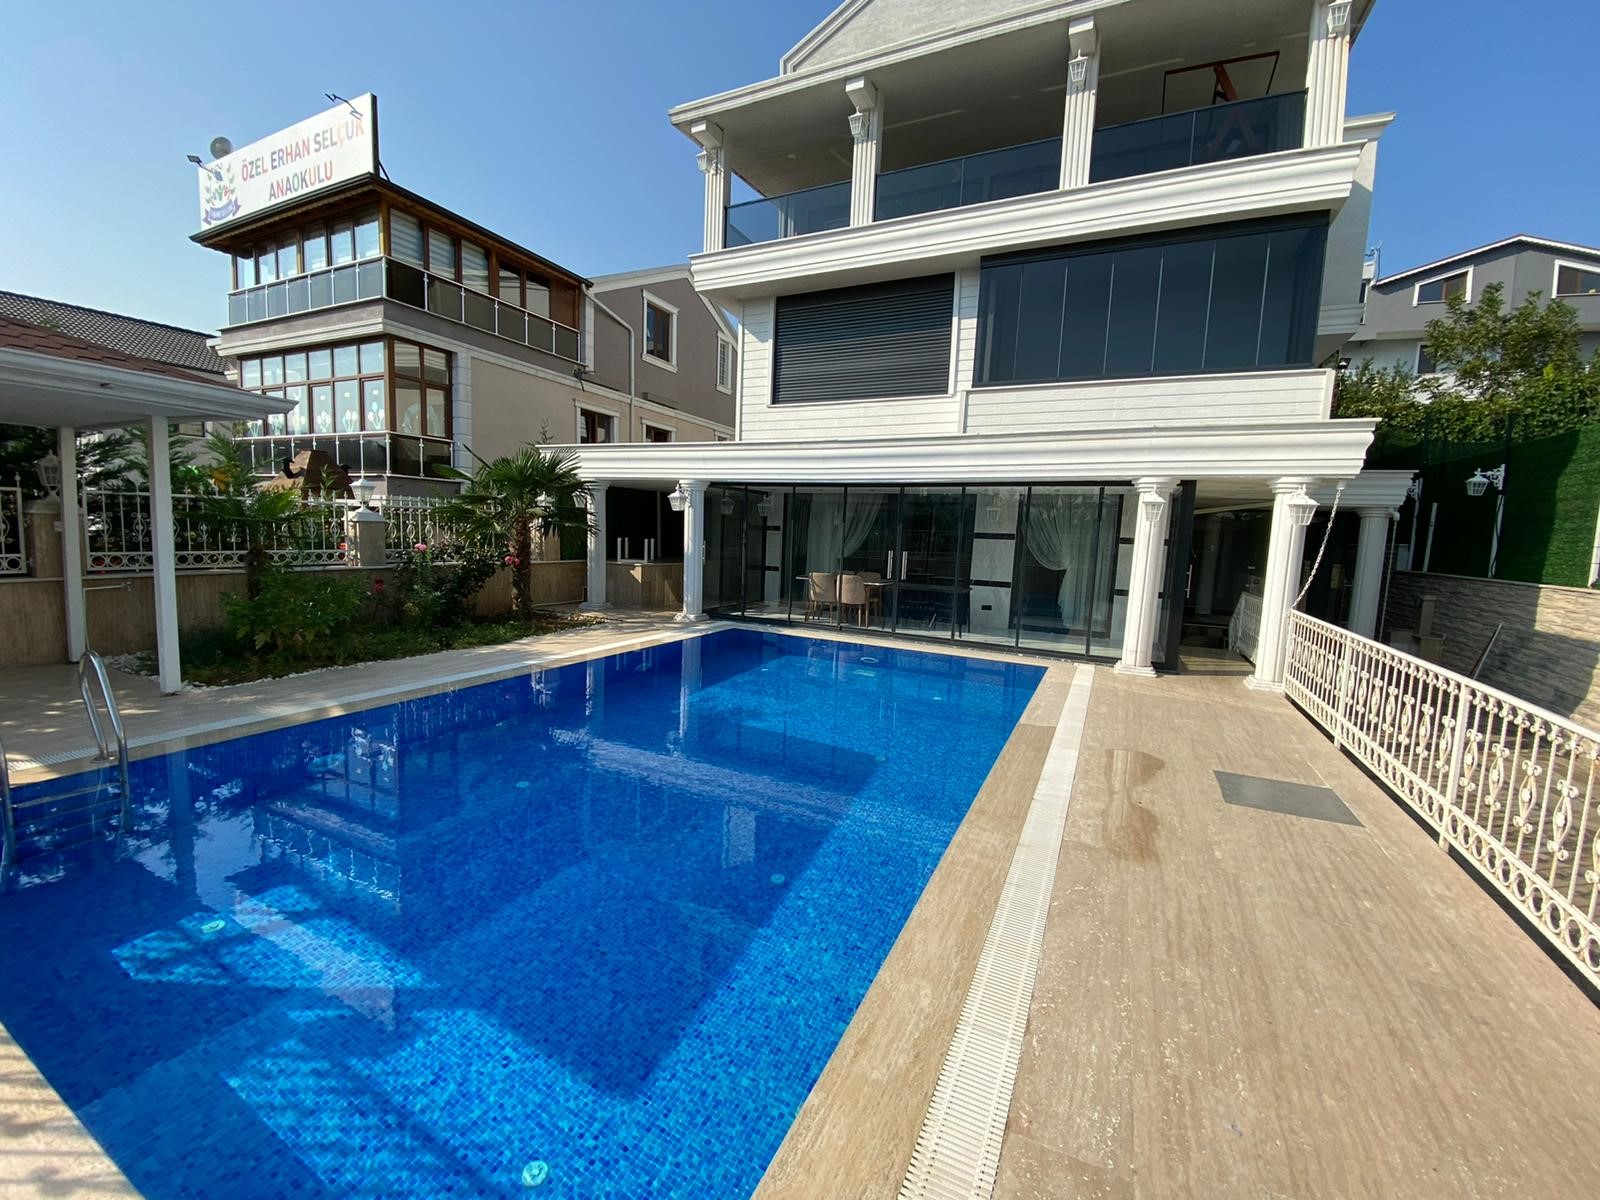 خرید خانه در ترکیه با کمک وکیل حقوقی-کاماپرس